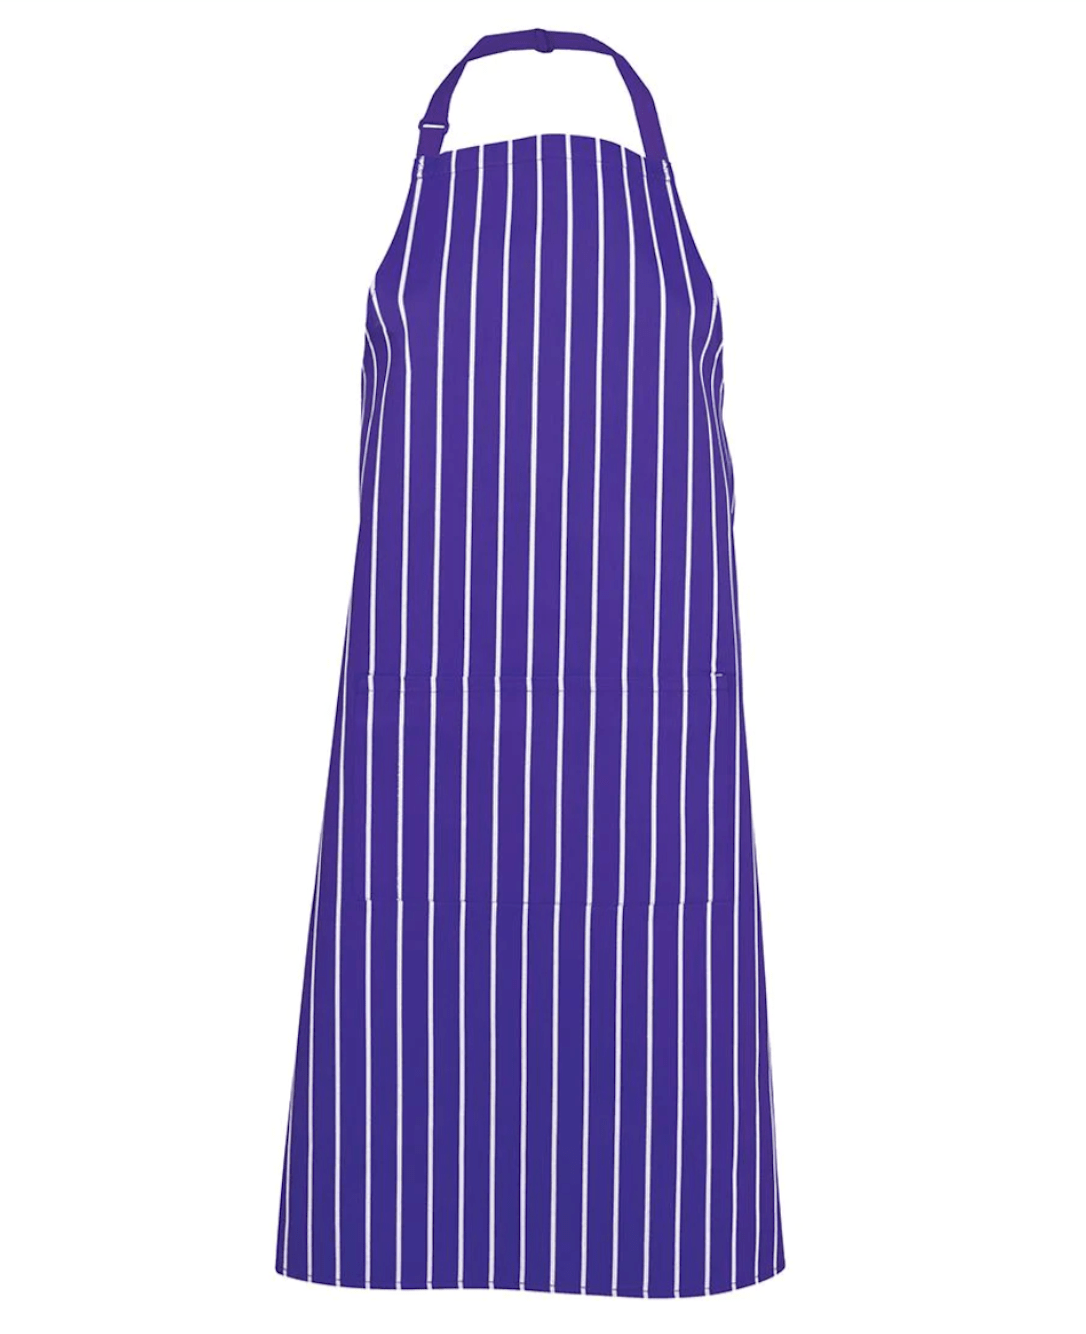 Apron Purple/White Striped Bib Apron